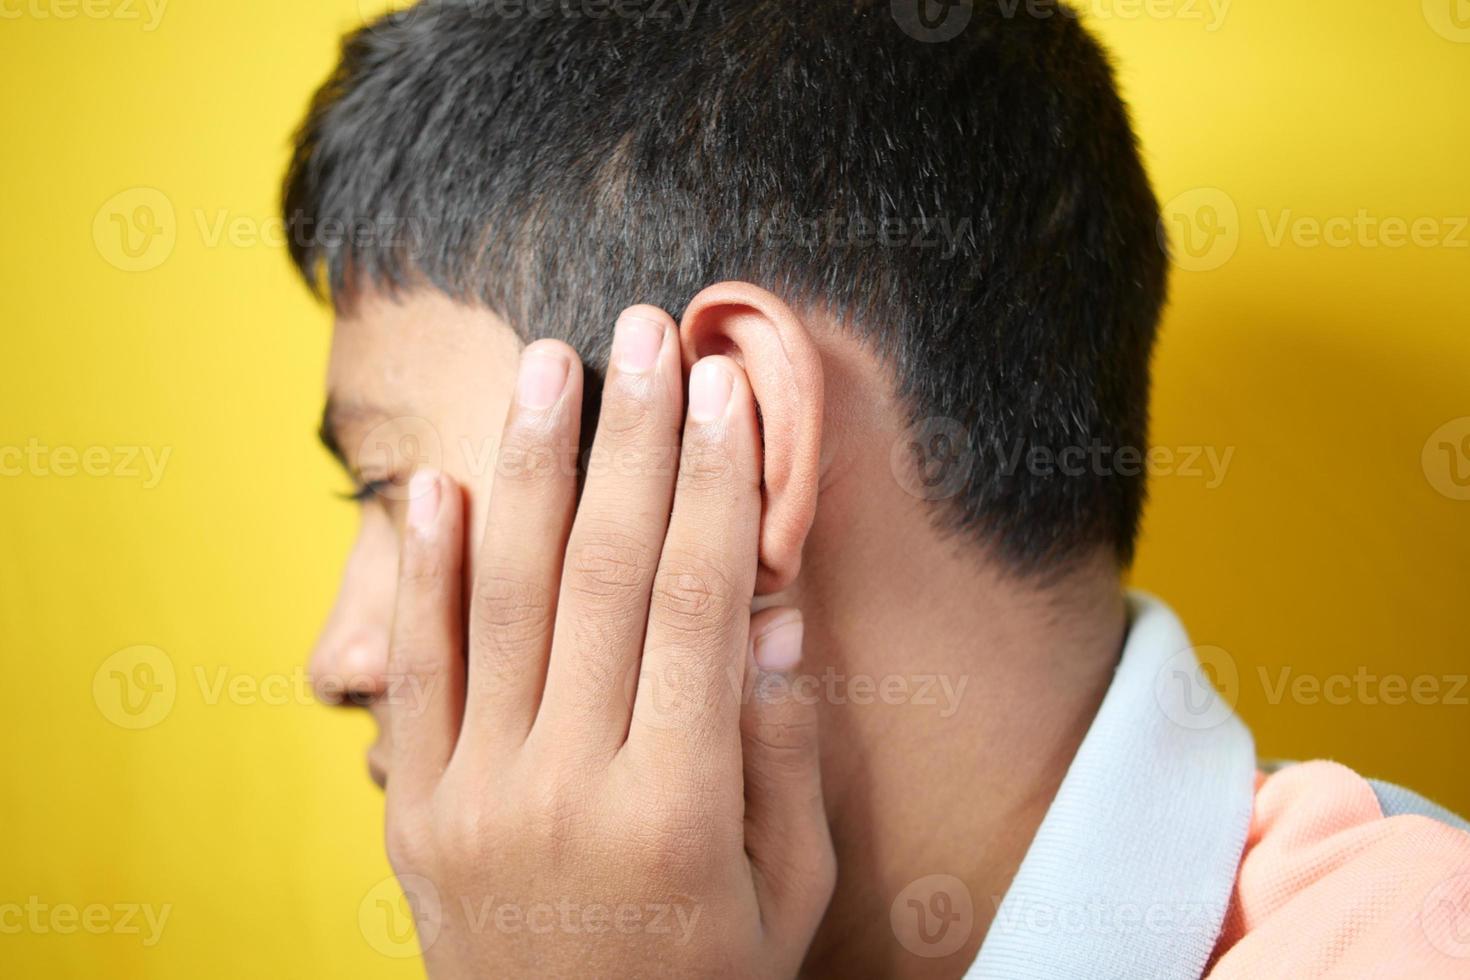 adolescente con dolor de oído tocando su oído doloroso, foto